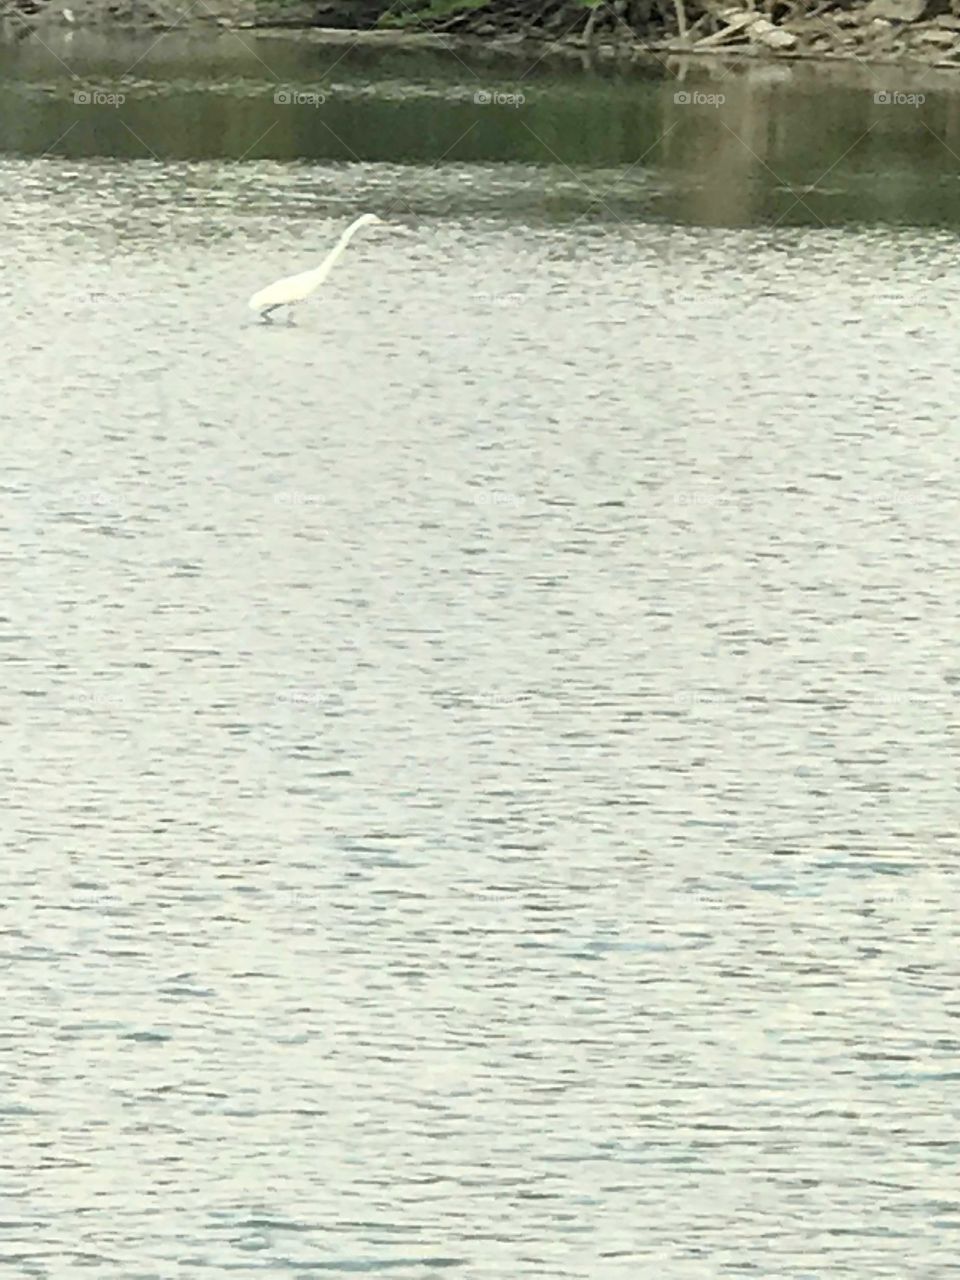 Lake-bird